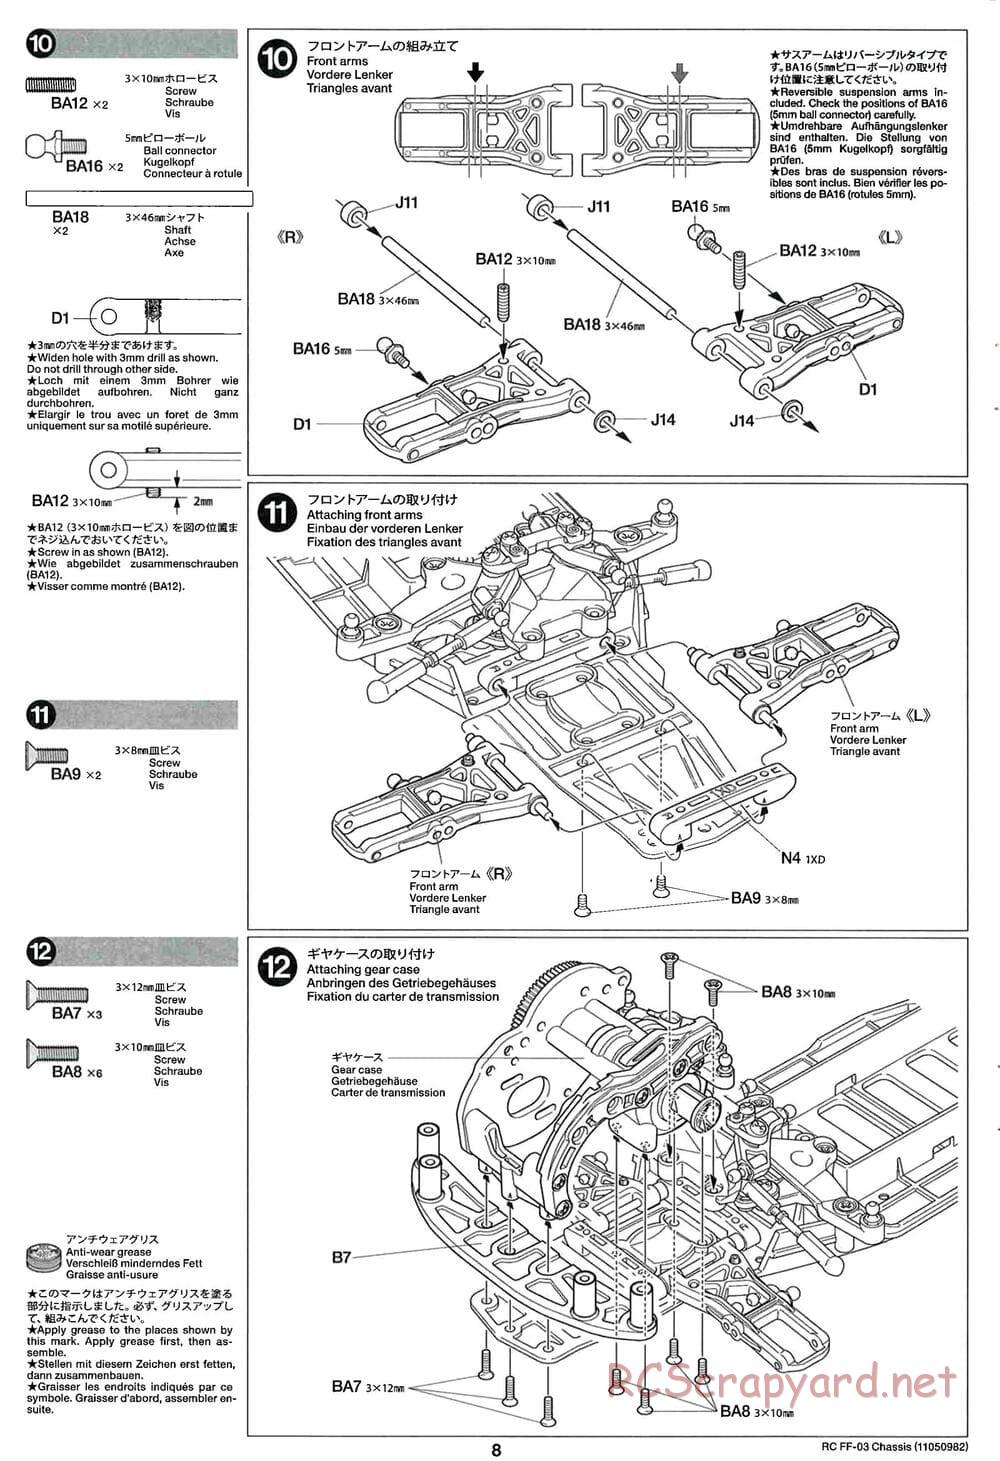 Tamiya - Honda CR-Z - FF-03 Chassis - Manual - Page 8